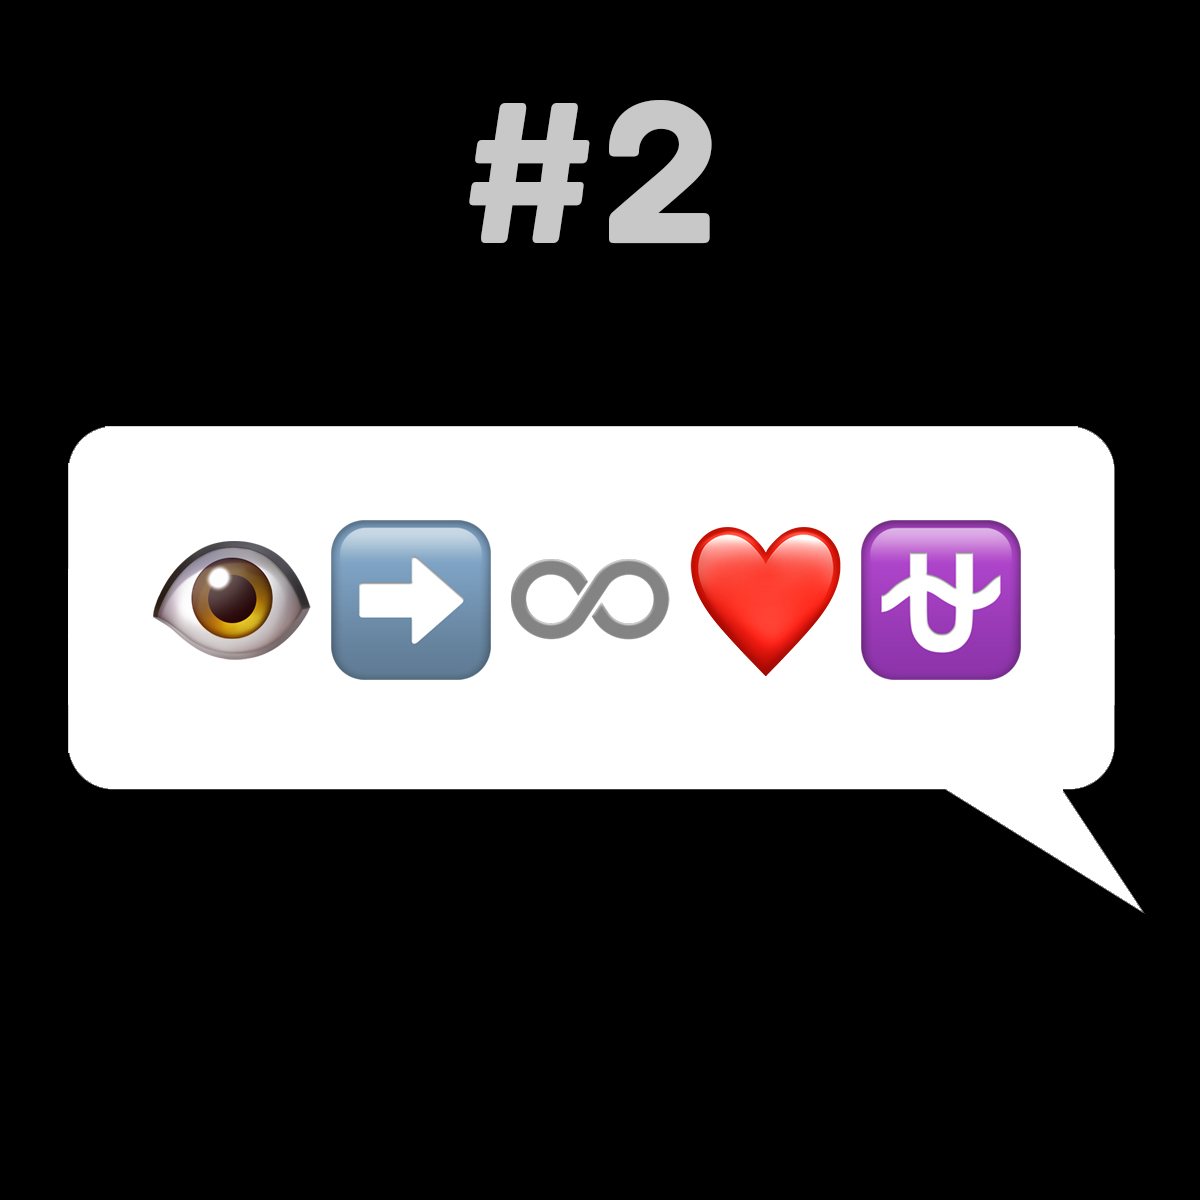 Songtitel in Emojis dargestellt emojibands_02 